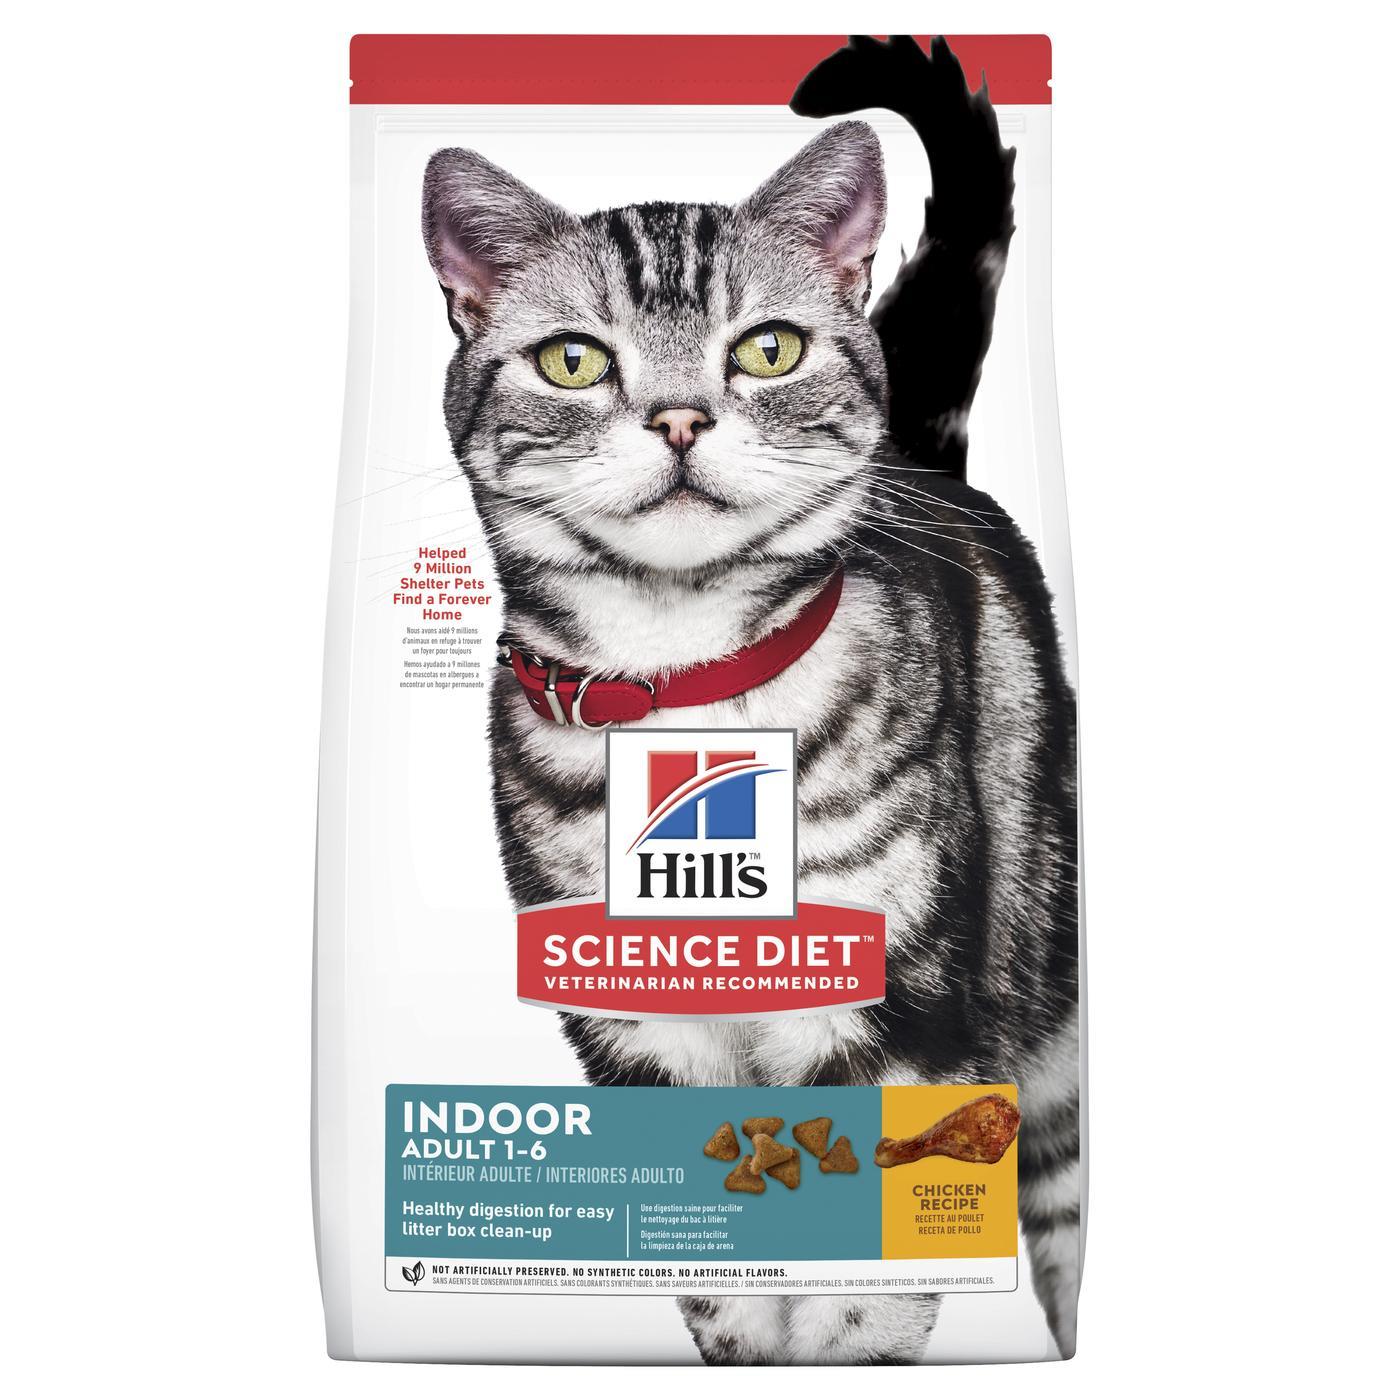 Hills Science Diet Adult Indoor Dry Cat Food 2kg